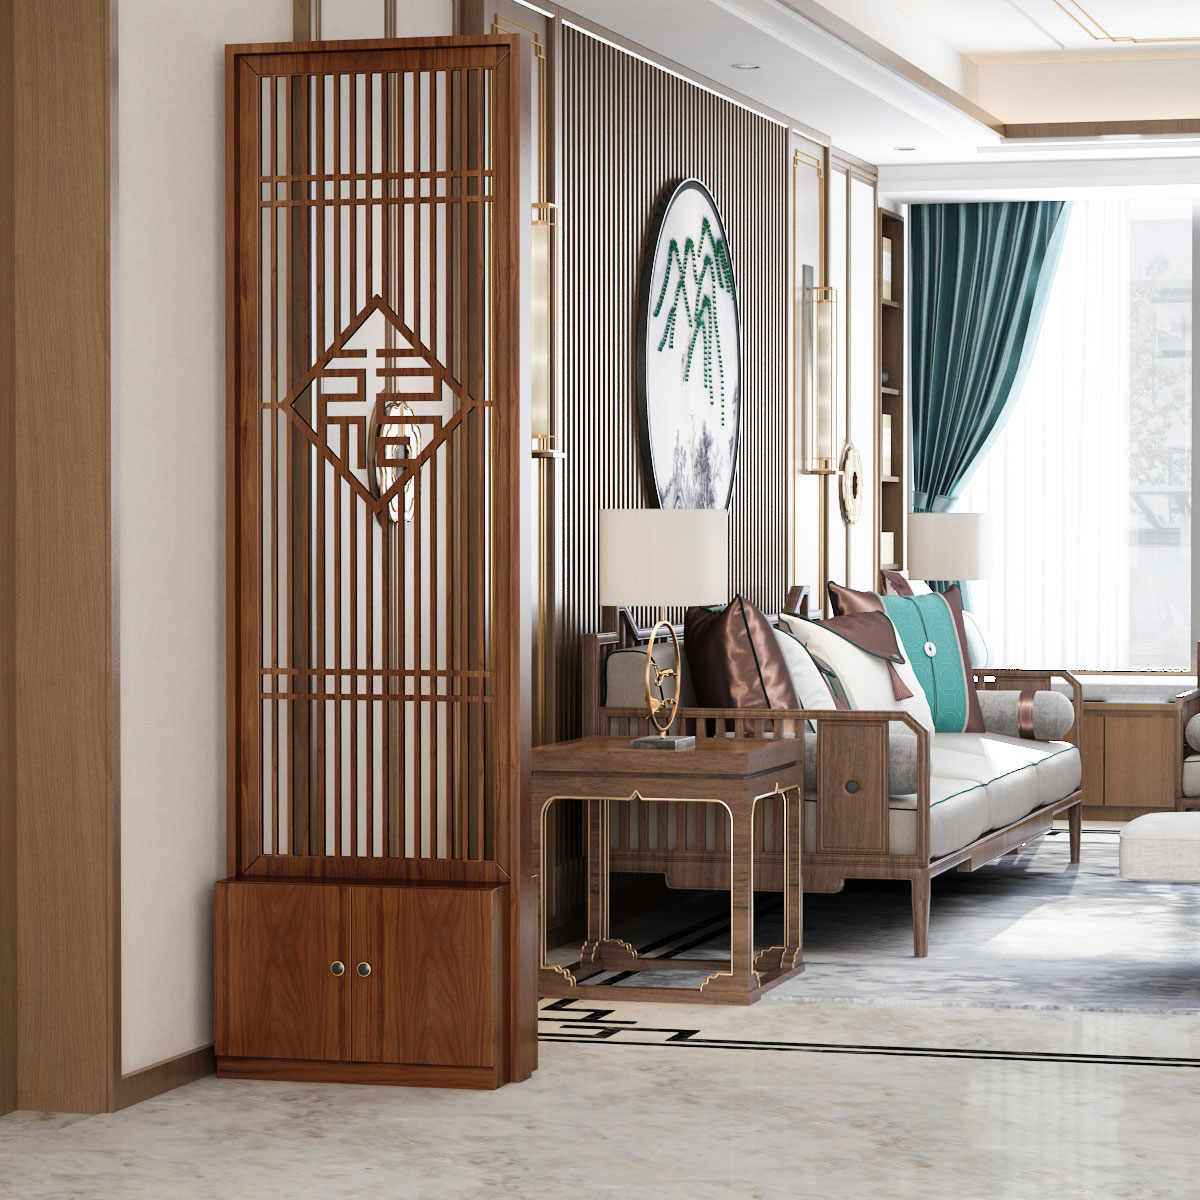 中式屏風 隔斷 木質 鏤空 雕花客廳 可移動 玄關 鞋櫃包郵簡約現代 裝飾架